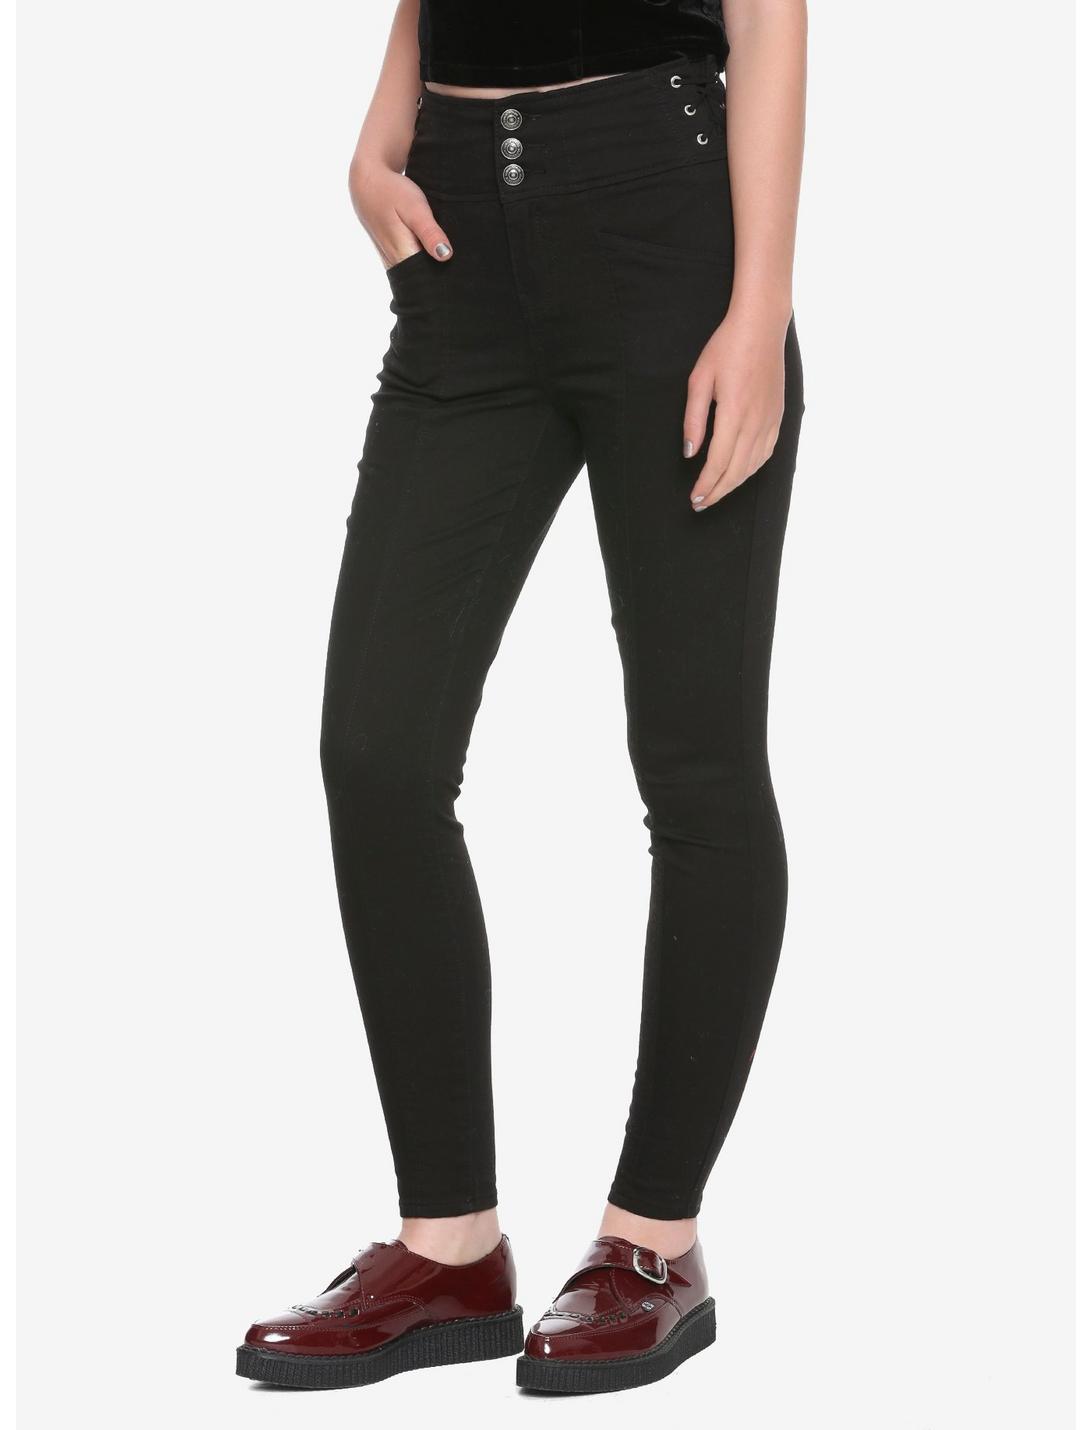 Black Side Lace-Up High Waist Skinny Jeans, BLACK, hi-res